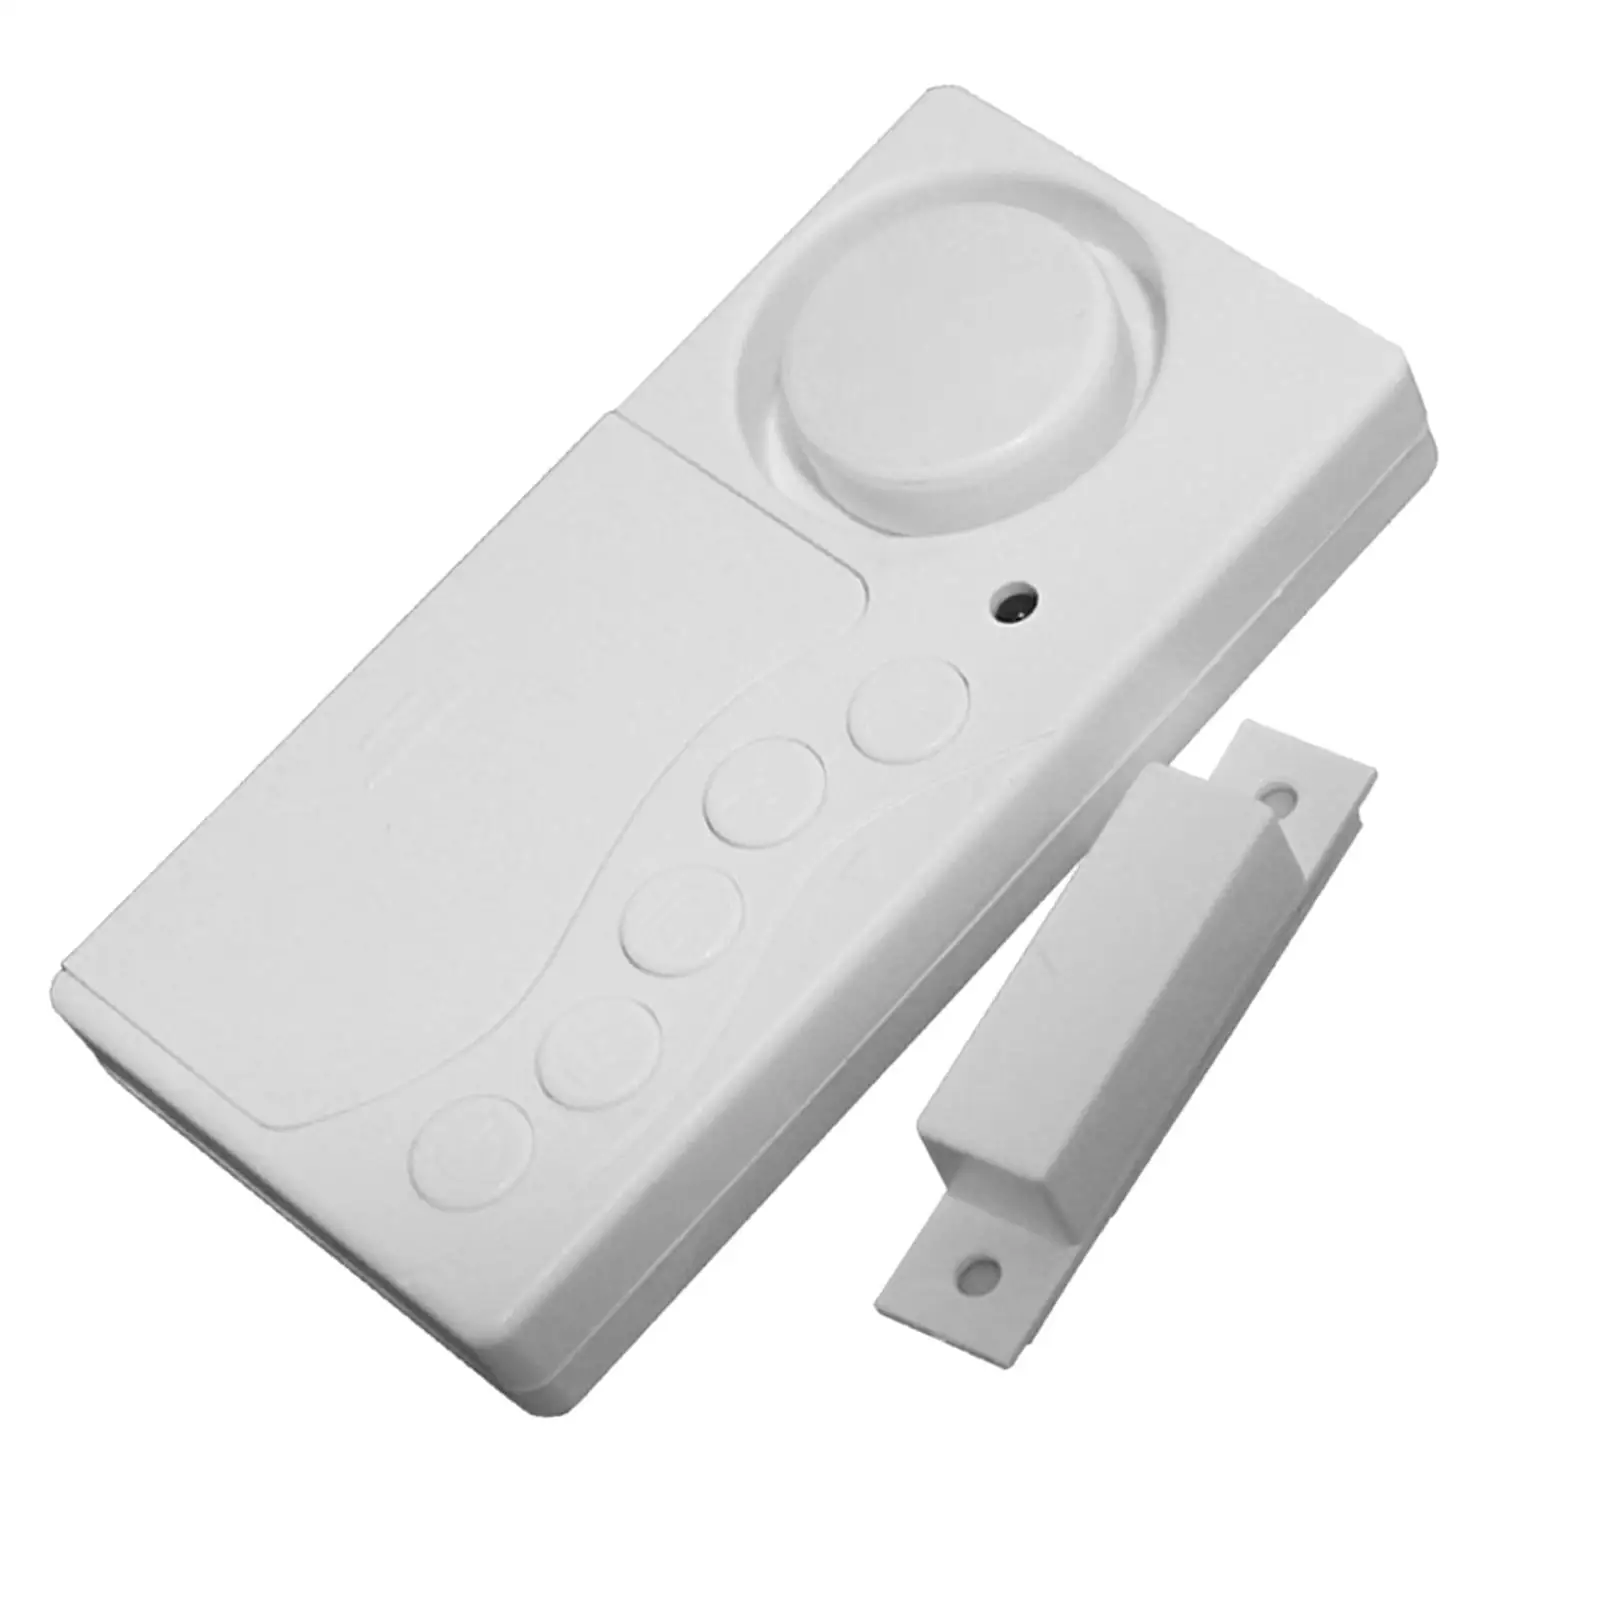 108dB Loud Door Sensor Alarm Security Alarm Open Detection for Children